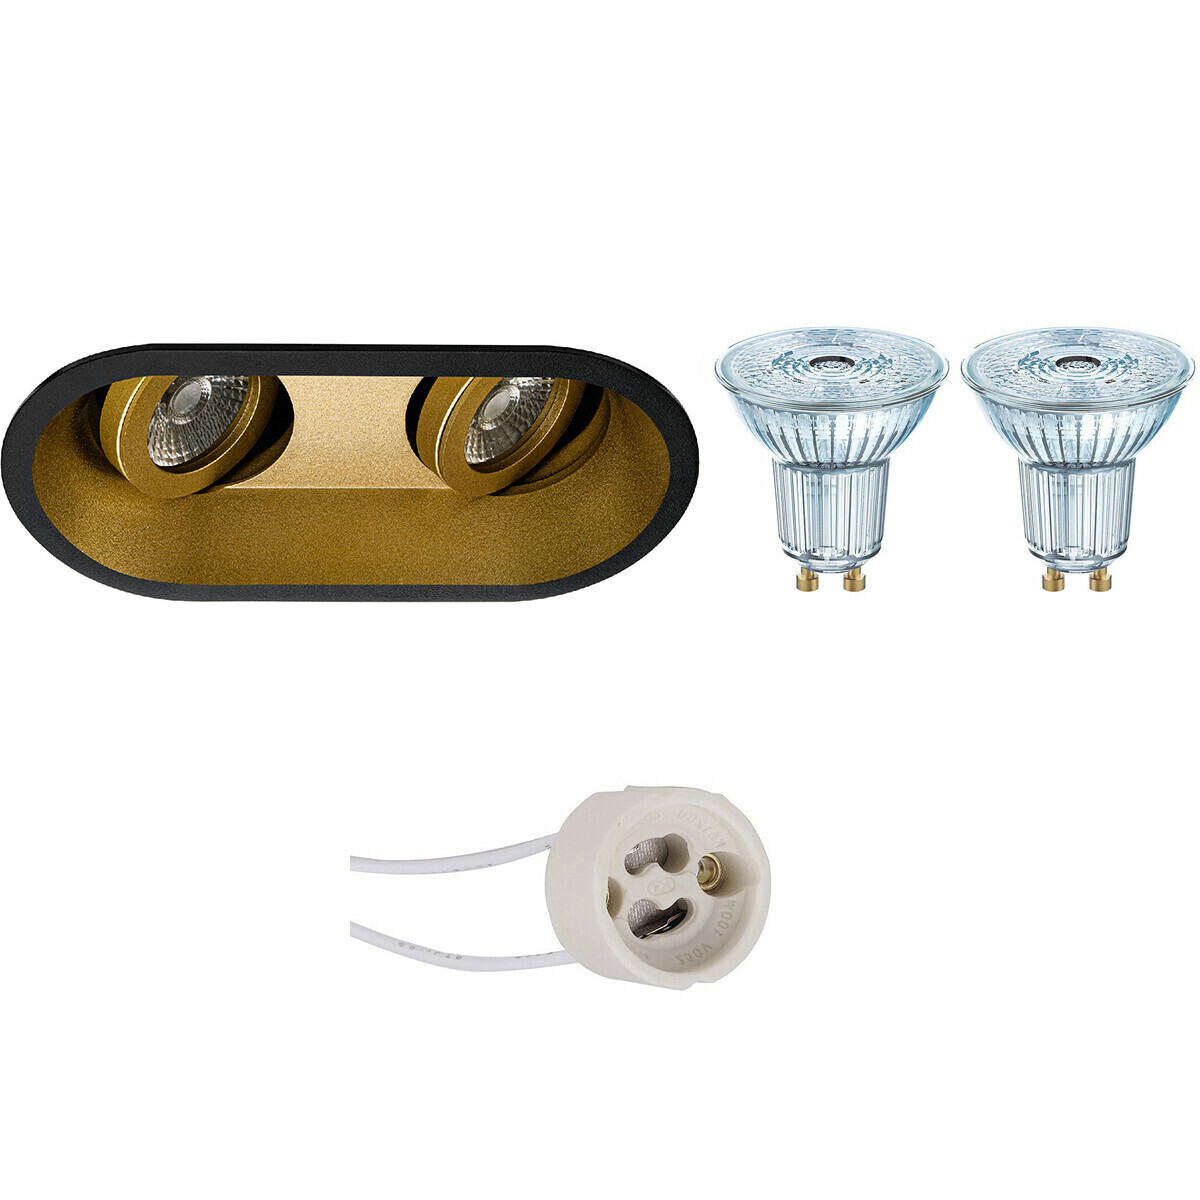 Osram Voordeelset - LED Spot Set - Parathom PAR16 940 36D - Pragmi Zano Pro - GU10 Fitting - Dimbaar - Inbouw Ovaal Dubbel - Mat Zwart/Goud - 3.7W - Natuurlijk Wit 4000K - Kantelbaar - 185x93mm